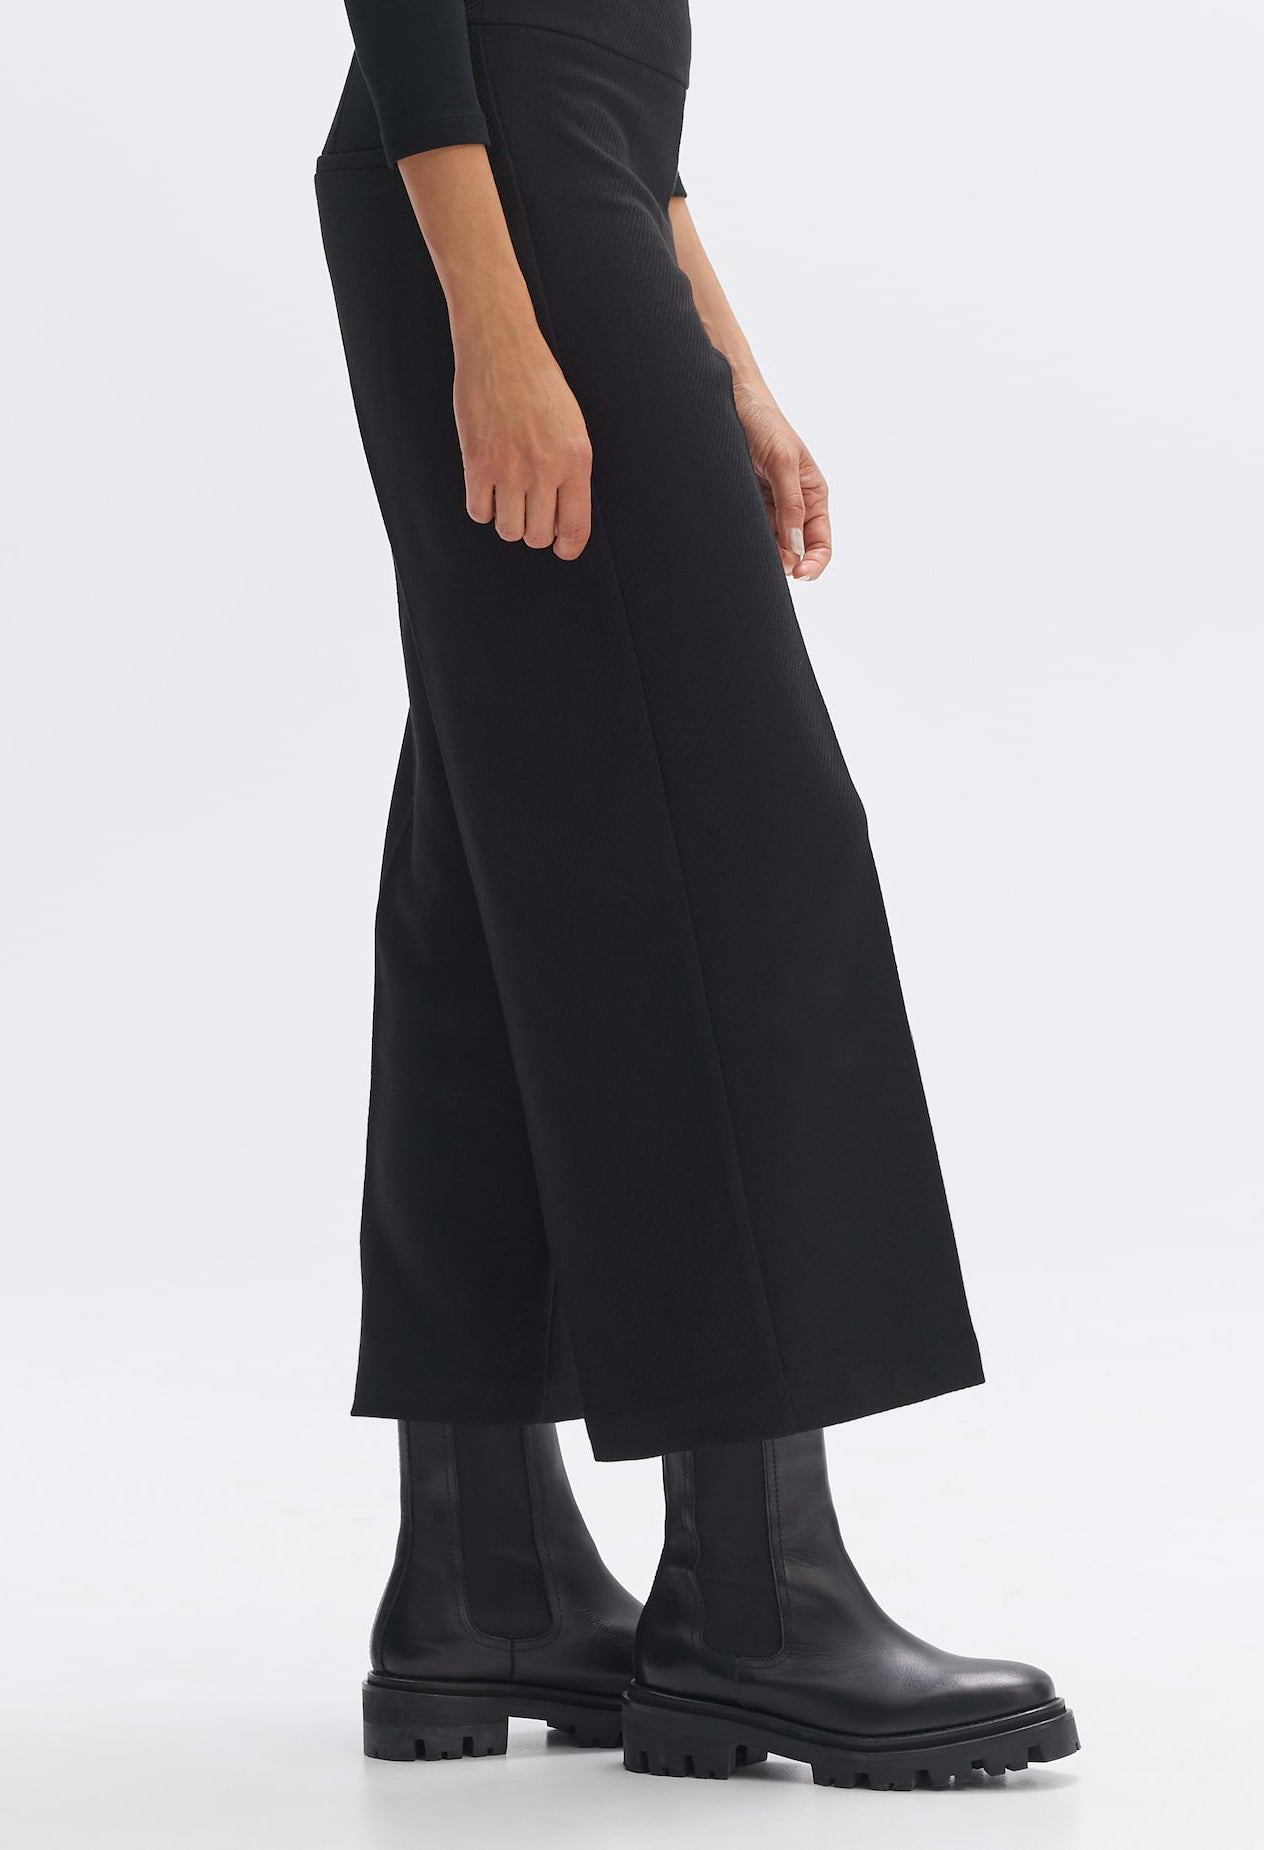 Zapara Lurex Blend Fine Knit Wide Leg Trousers in Black | Pamela Scott